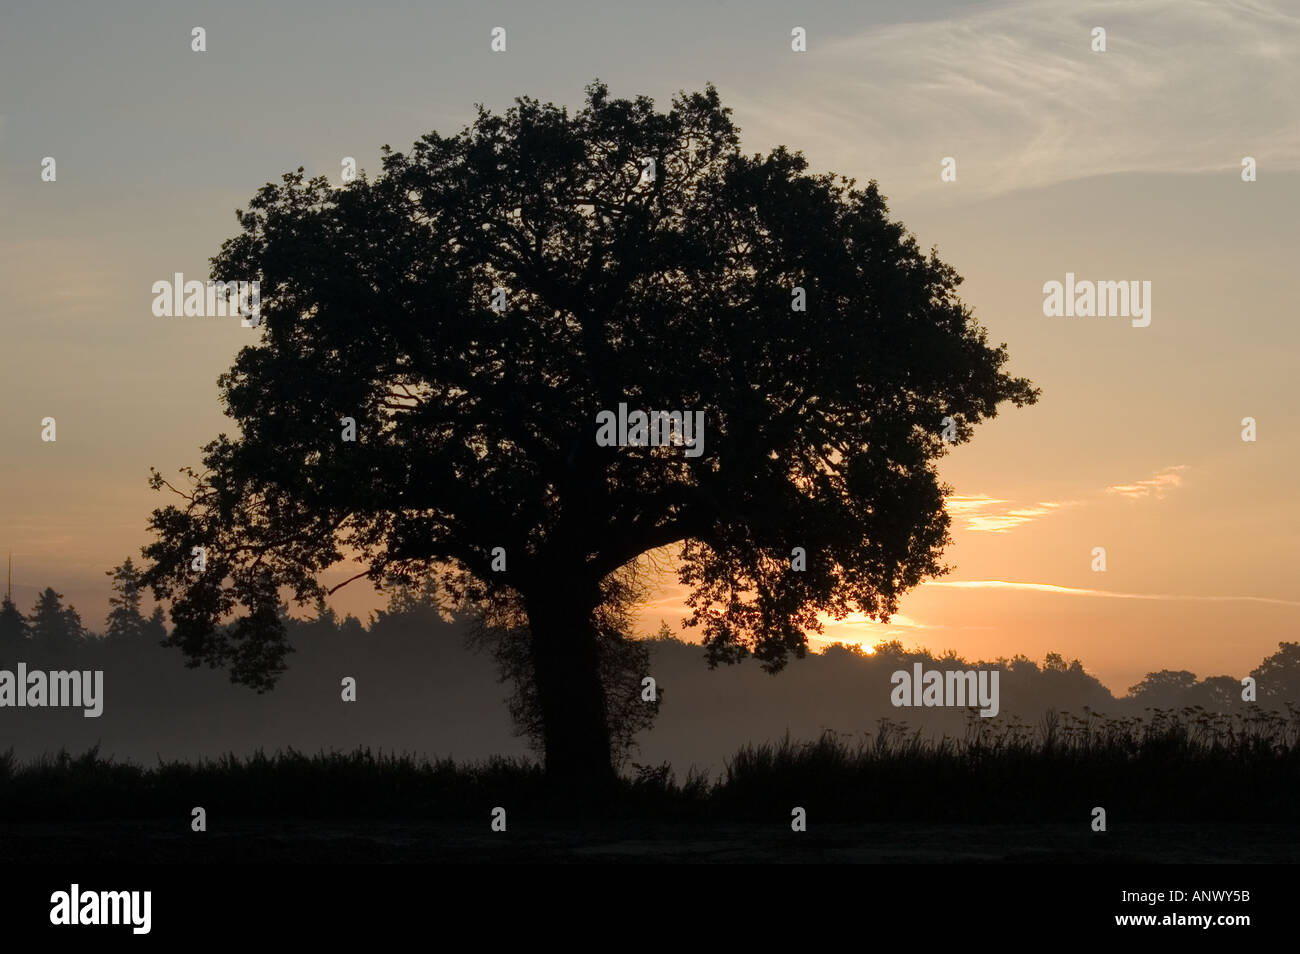 Seul arbre lever de soleil derrière la silhouette du misty tree norfolk england uk Banque D'Images